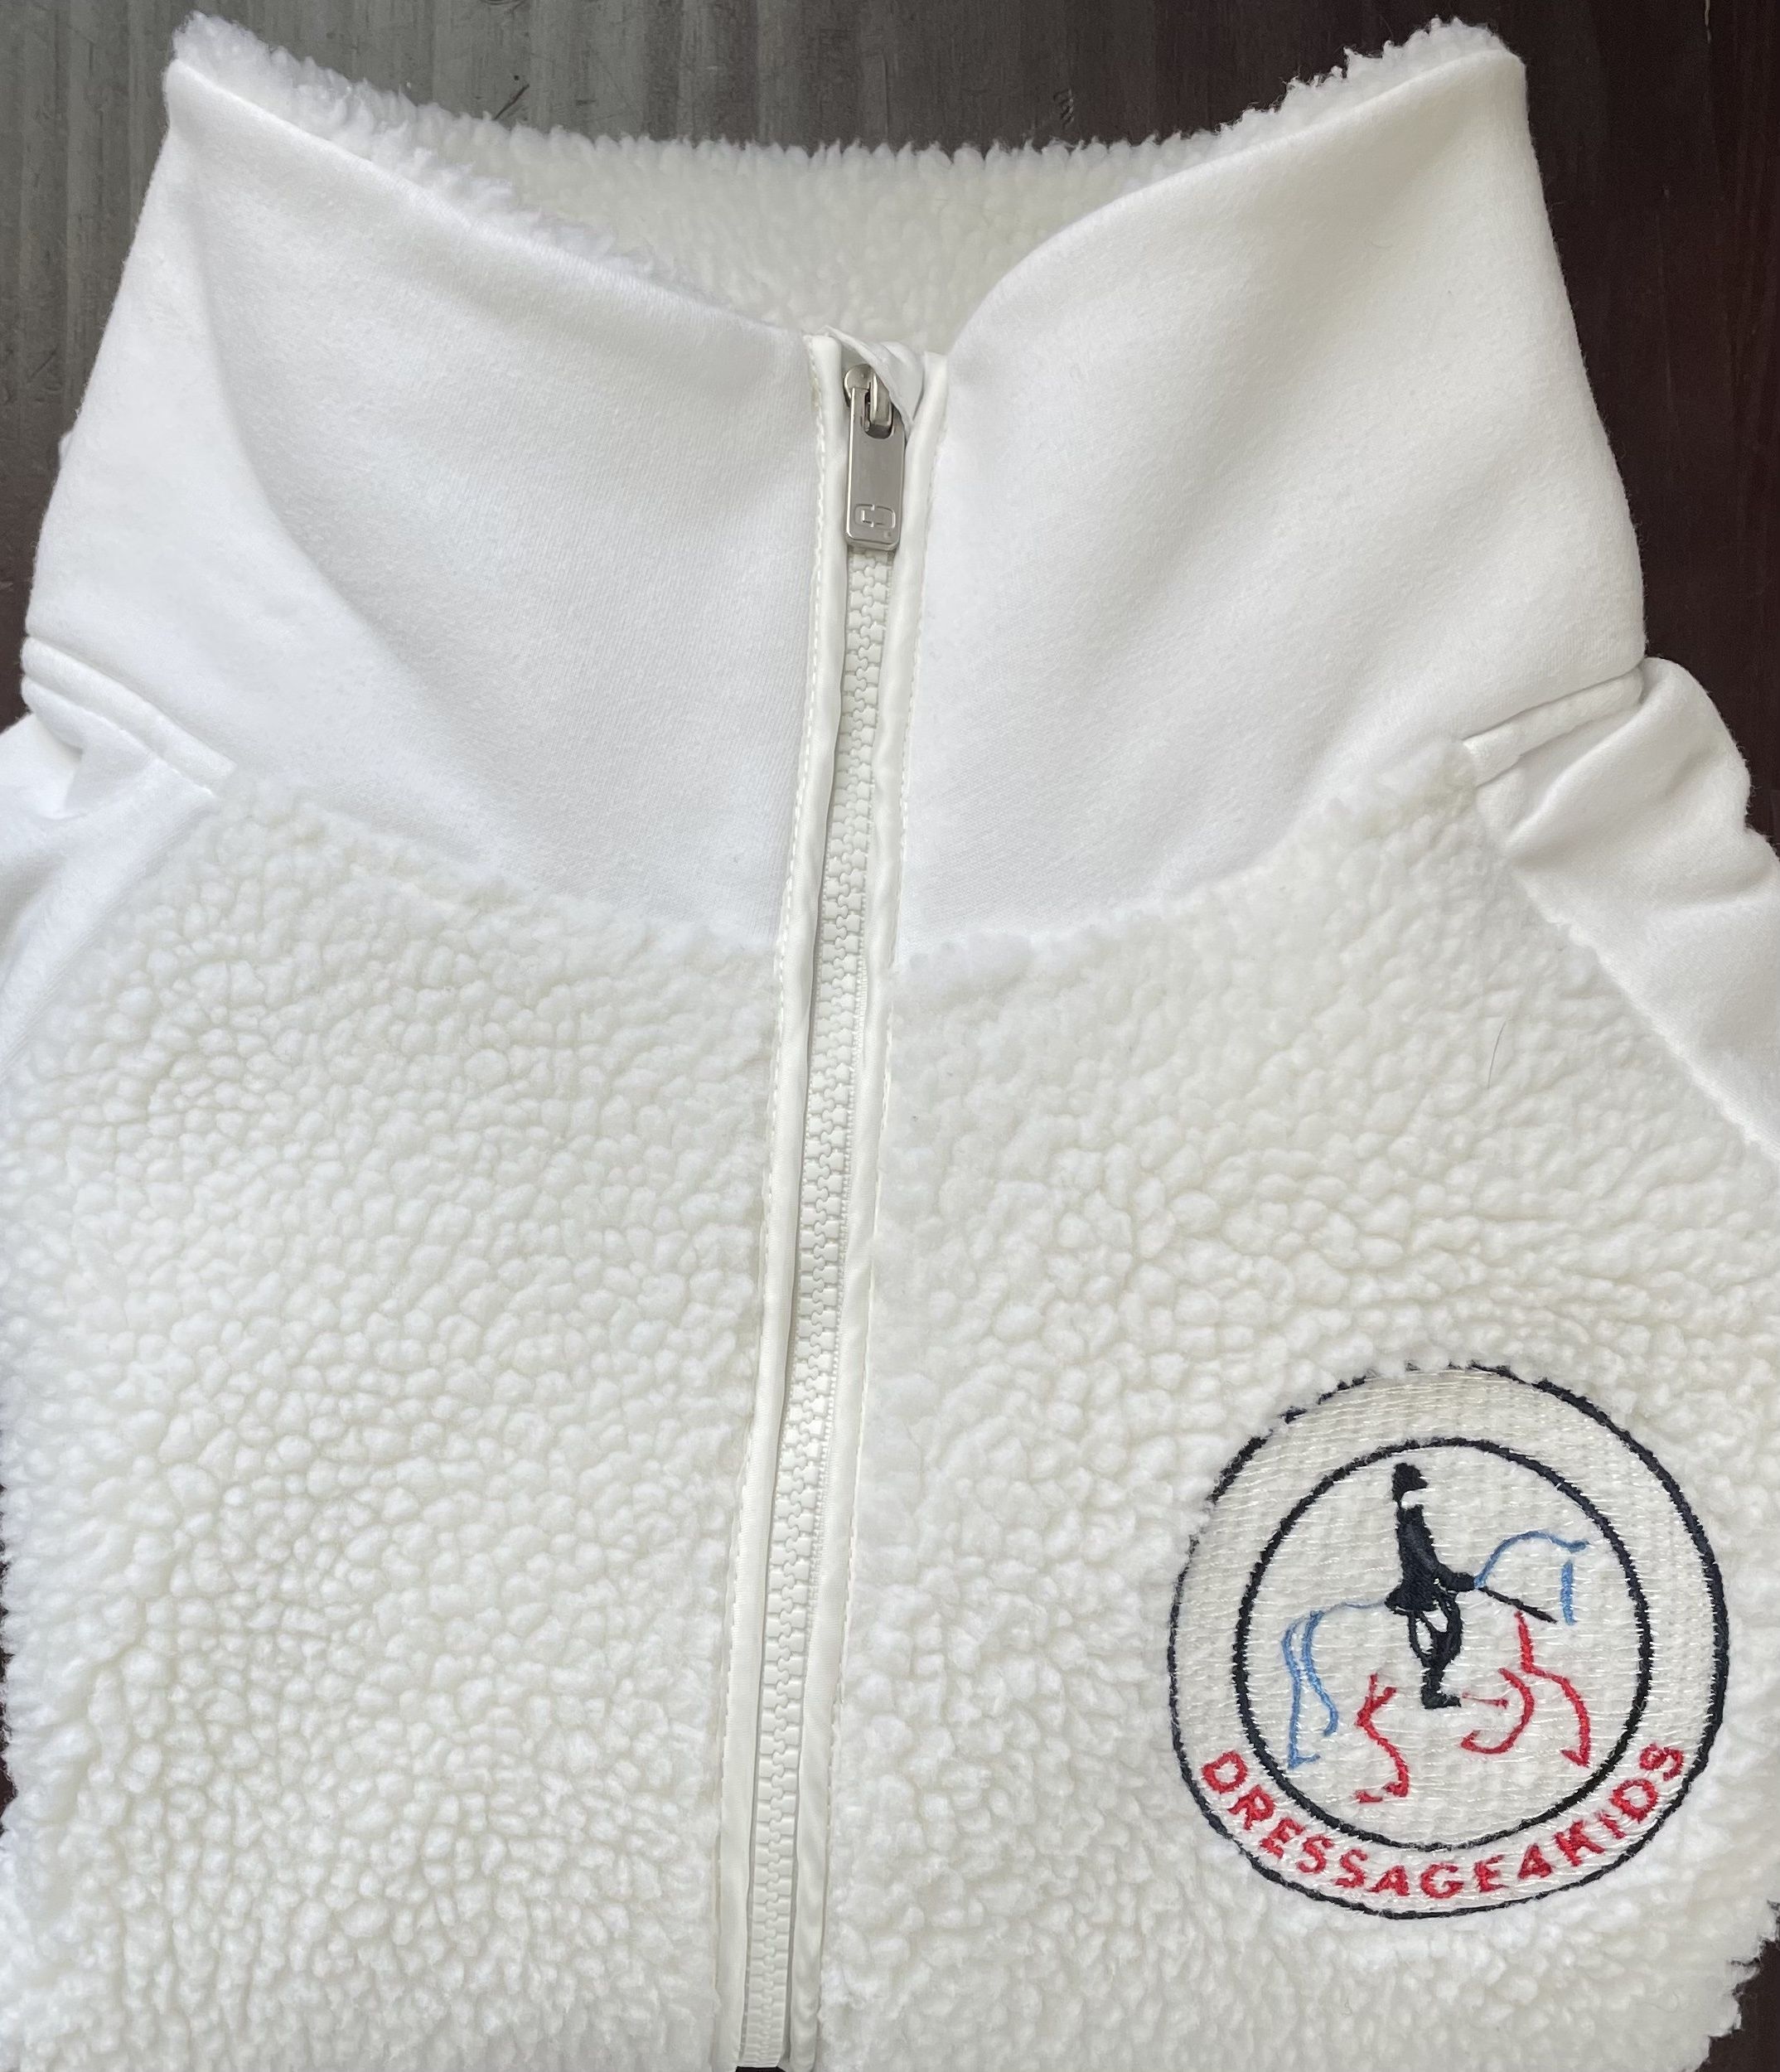 D4K Sherpa Fleece Zip Jacket - $39 - Ladies XS, Ladies S, Ladies M - Click for Details